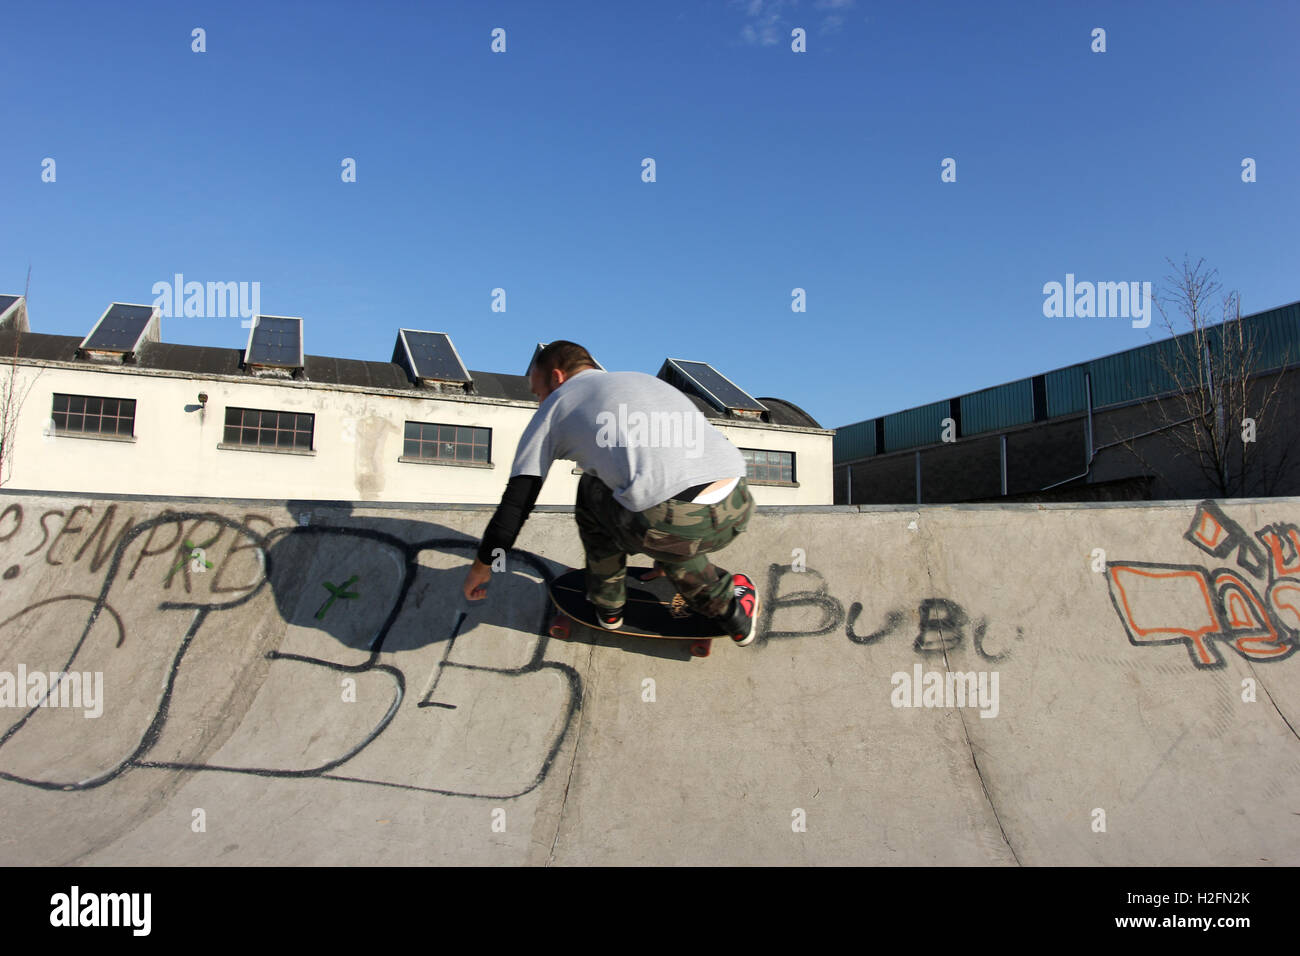 Skateboard, skateboard, stile vecchia scuola, urban sport, skatepark, hipster, radicale, gioventù, carving Foto Stock